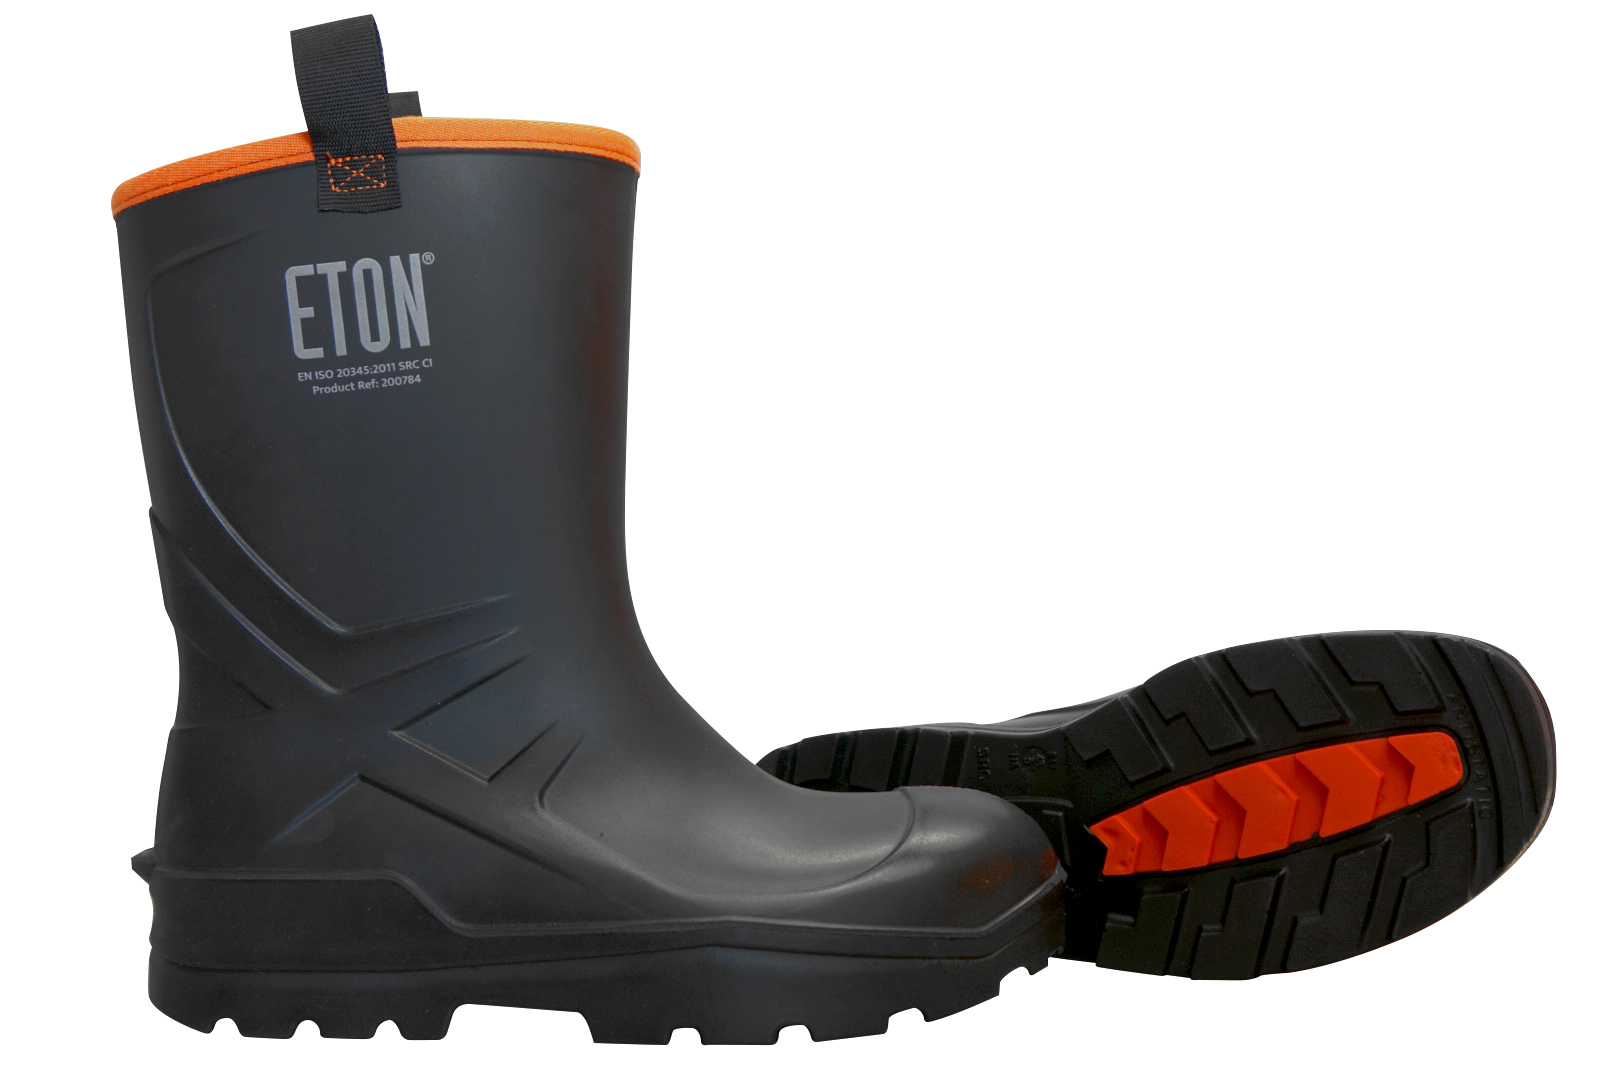 ETON DuraBoot Rigger Full Safety Boot - Black, Size 12